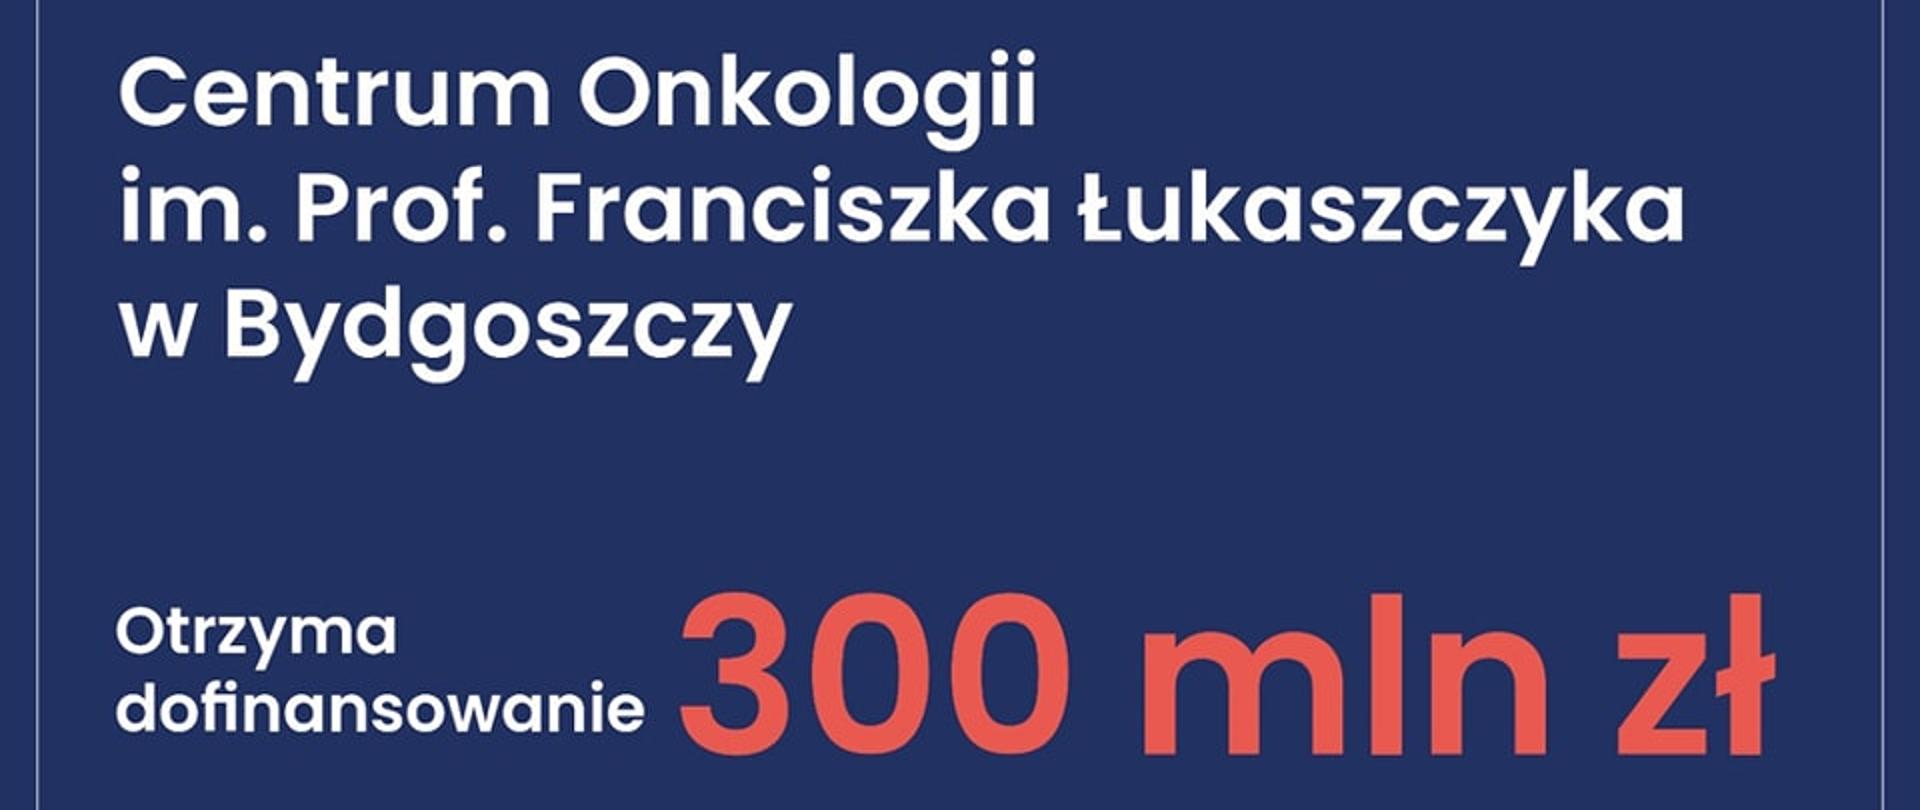 Rekordowe wsparcie dla szpitali - Bydgoskie Centrum Onkologii otrzyma 300 mln zł